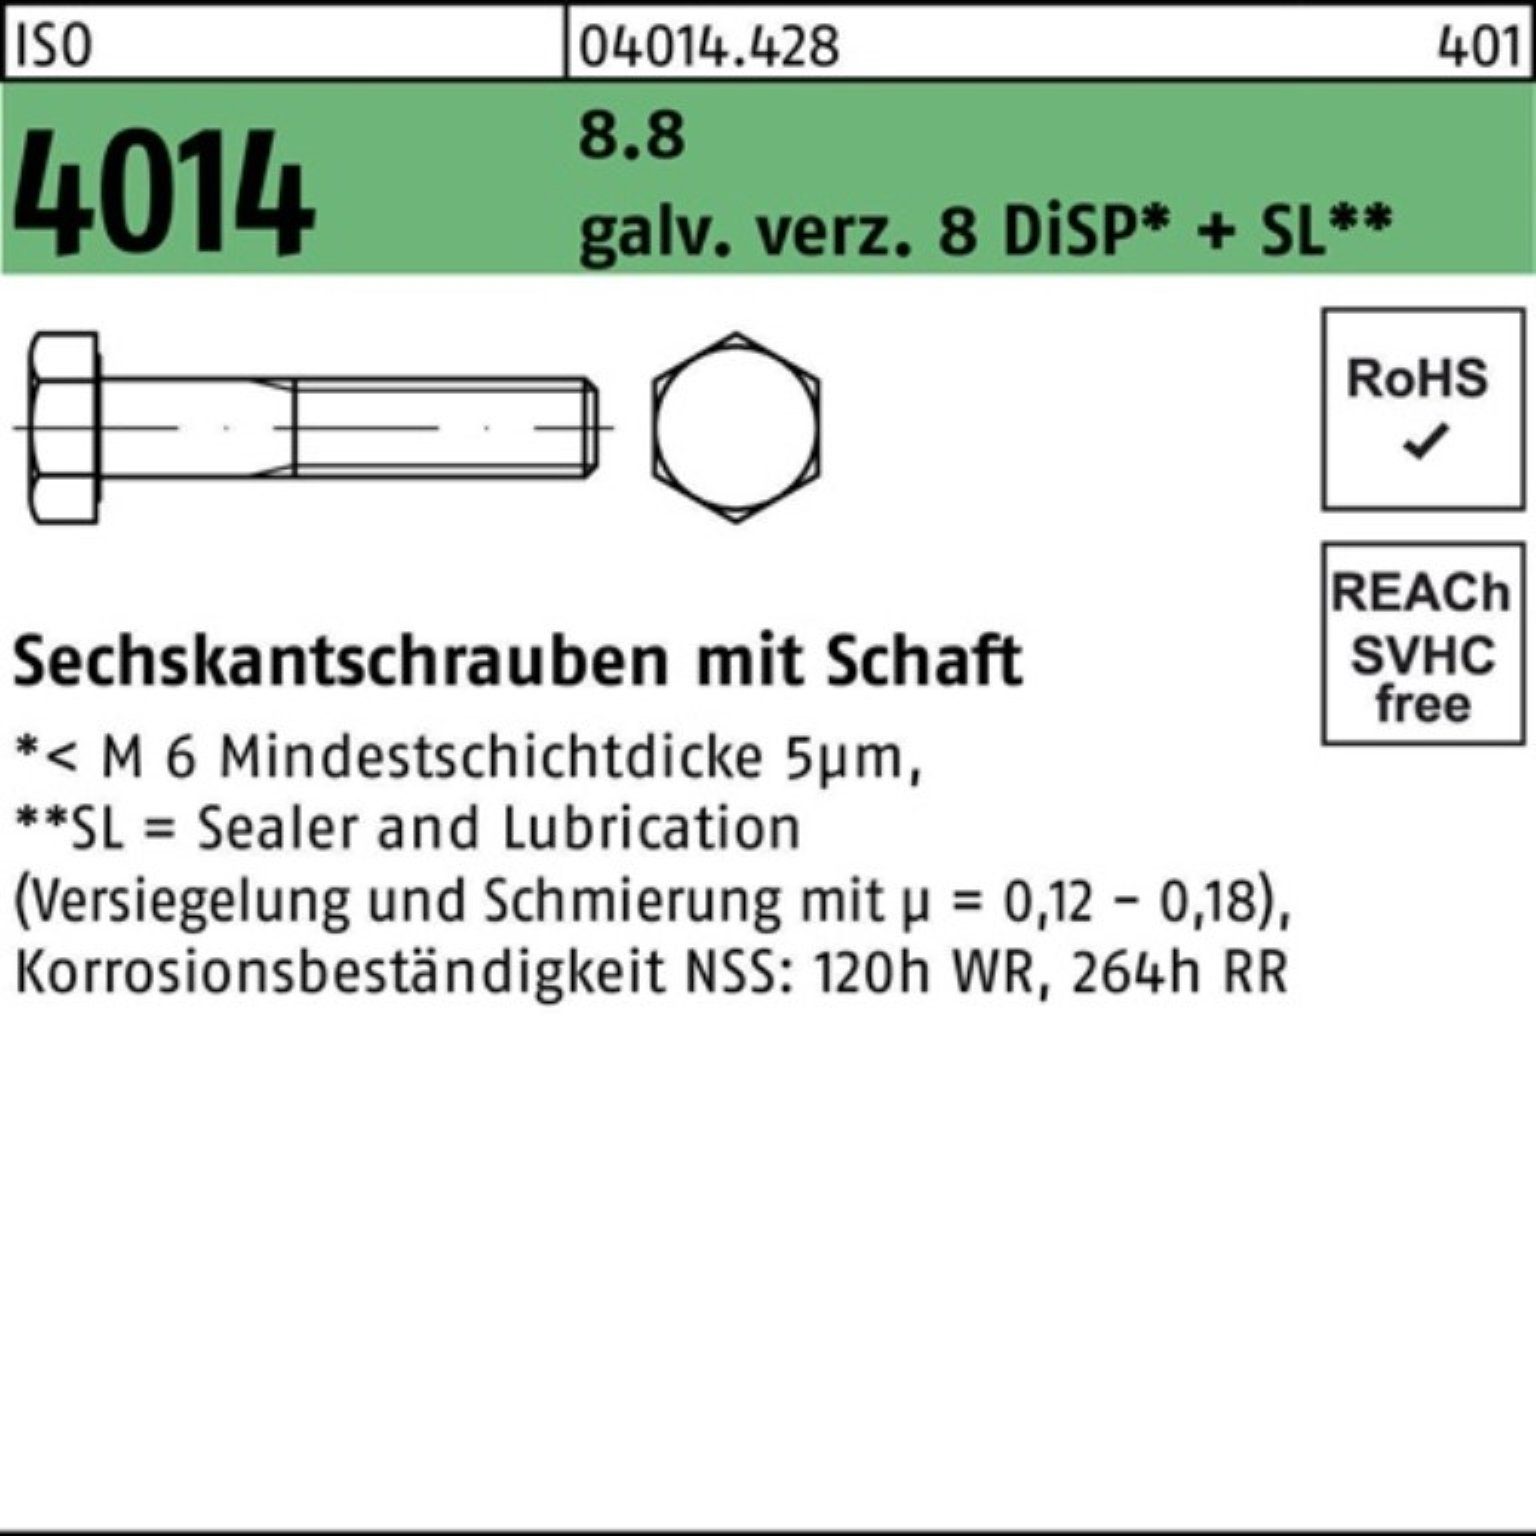 M12x100 Bufab Pack galv.verz. 8.8 ISO 8 Schaft 100er Sechskantschraube 4014 Sechskantschraube